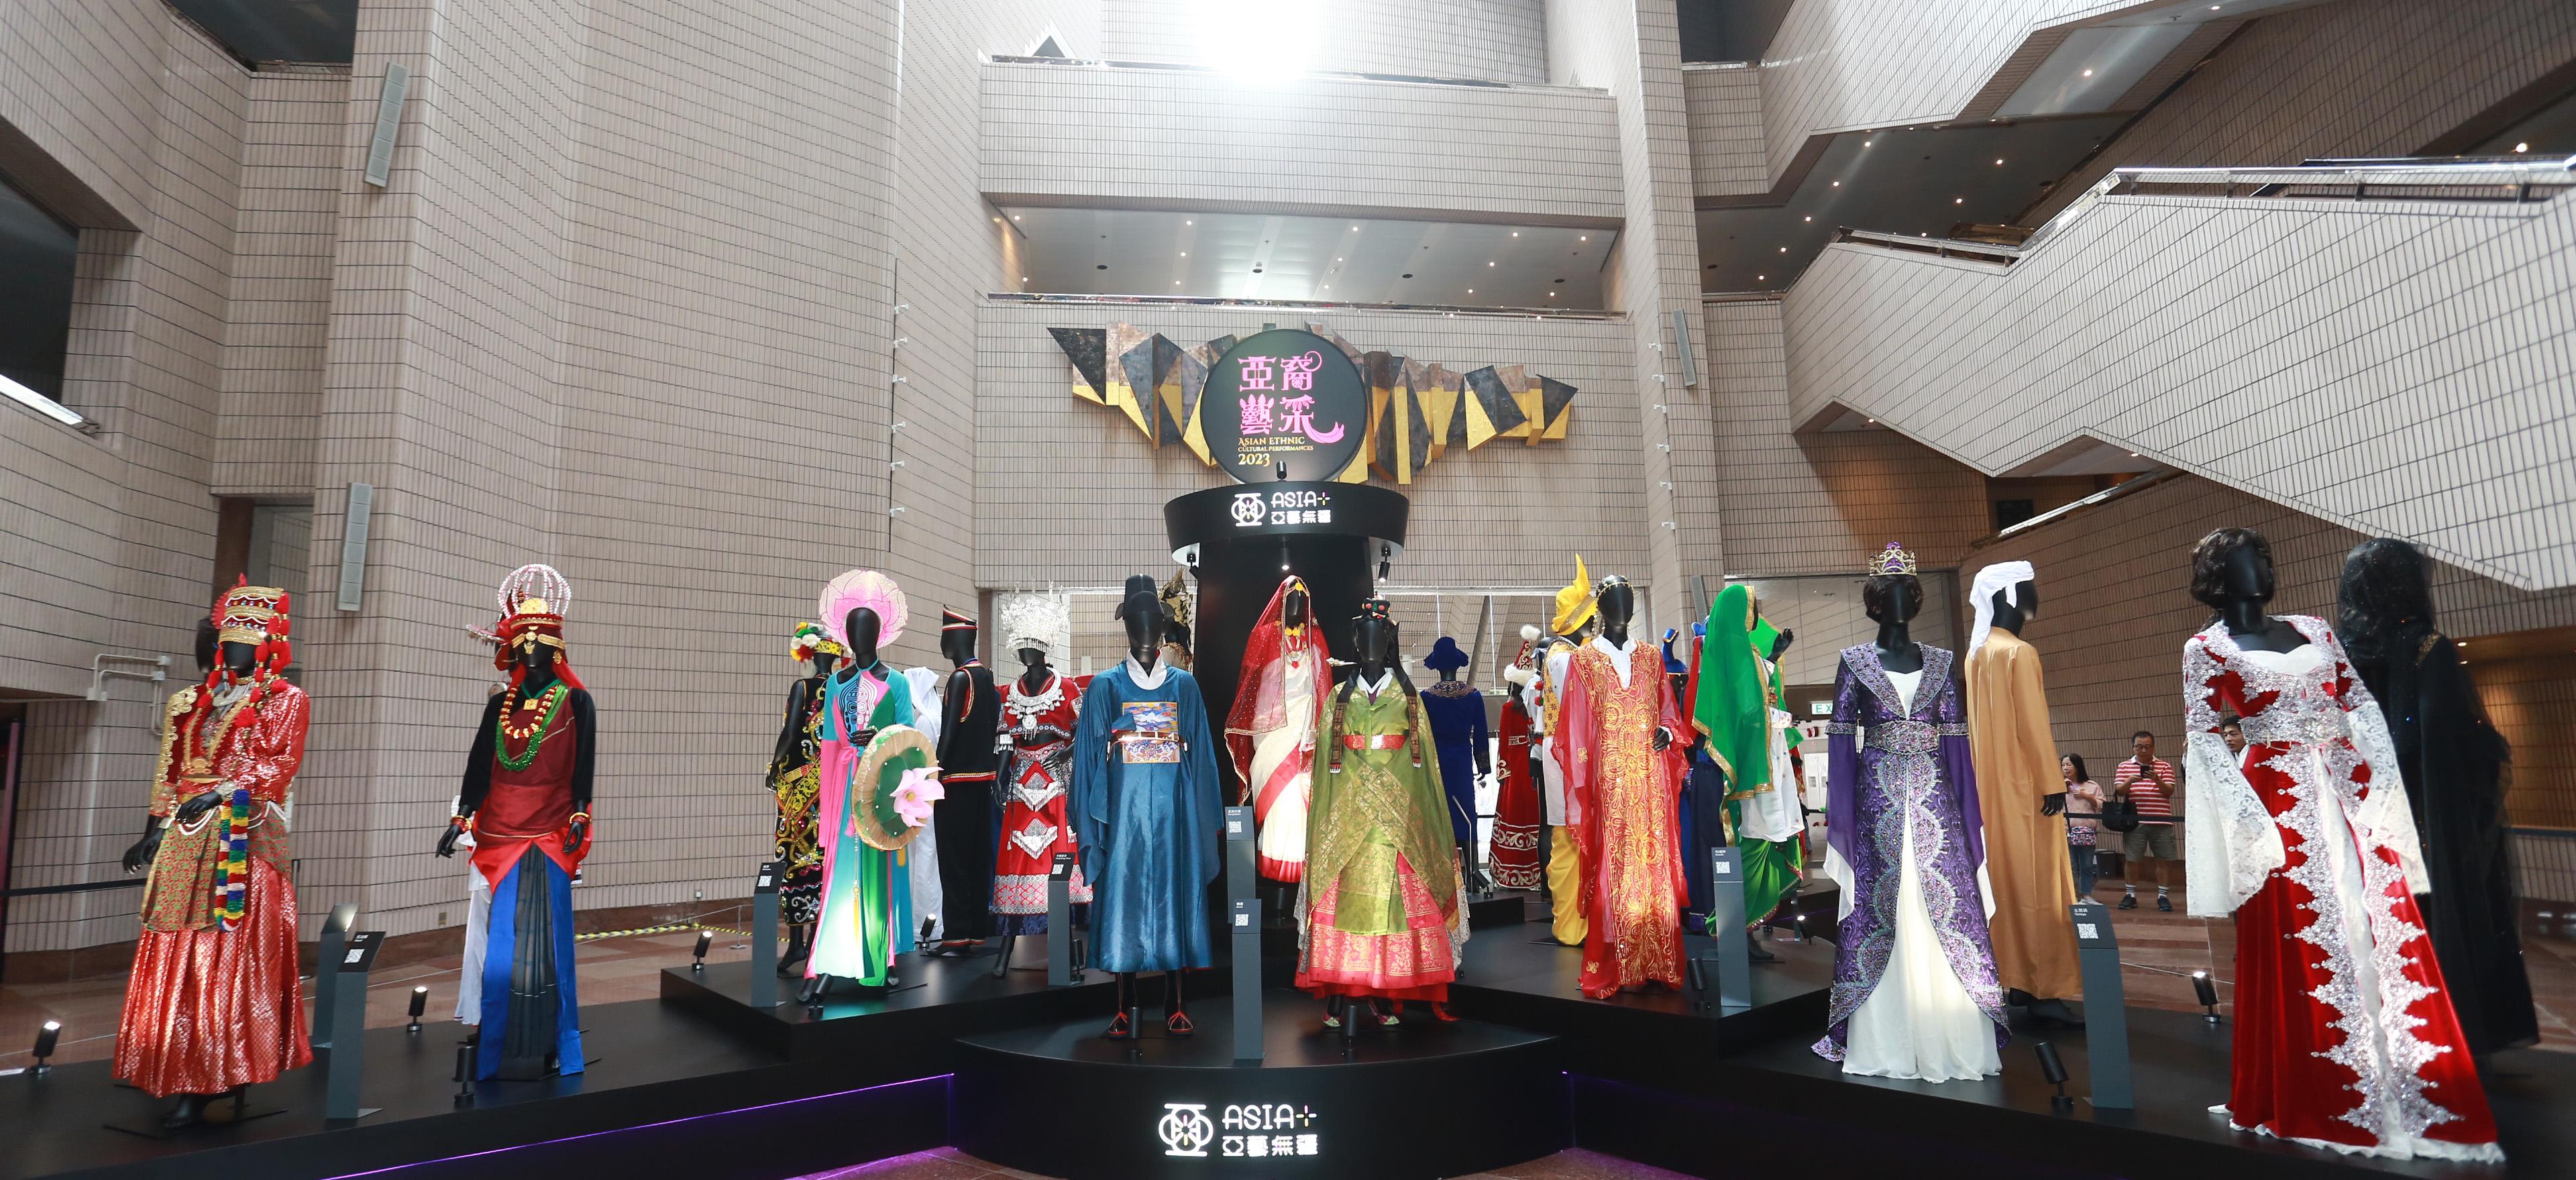 康樂及文化事務署今日（十一月十二日）下午在香港文化中心露天廣場舉行「亞裔藝采」，其中的「花冕霓裳—民族服裝頭飾展」在香港文化中心大堂舉行至十一月十九日，展示亞洲各地人民在節慶活動、歌舞表演等場合穿着的服裝和頭飾，繽紛多彩。